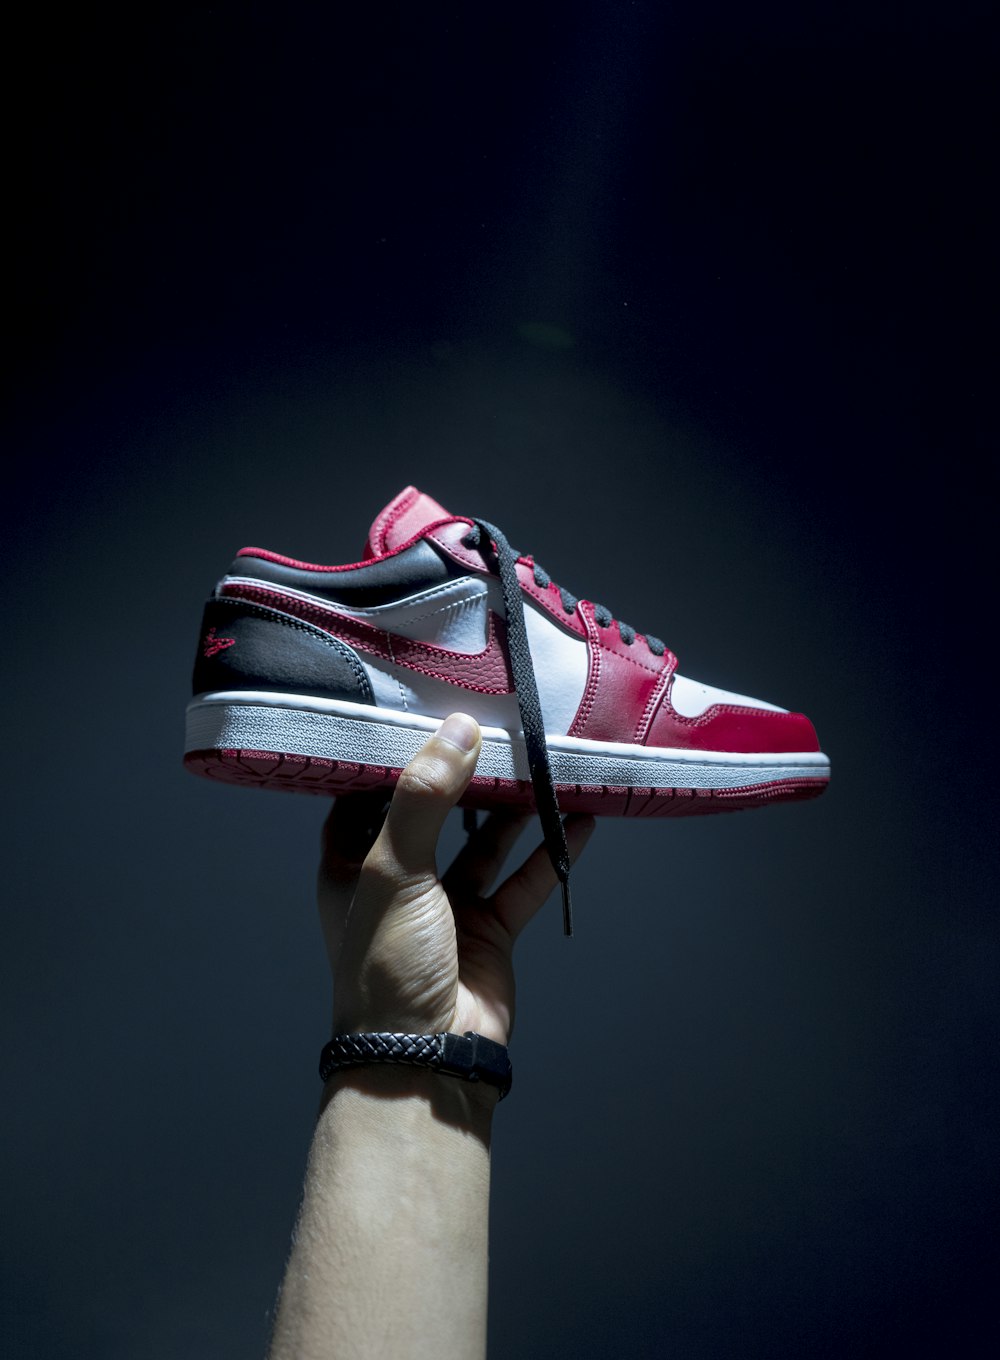 Imágenes de Jordan Nike | Descarga imágenes gratuitas en Unsplash